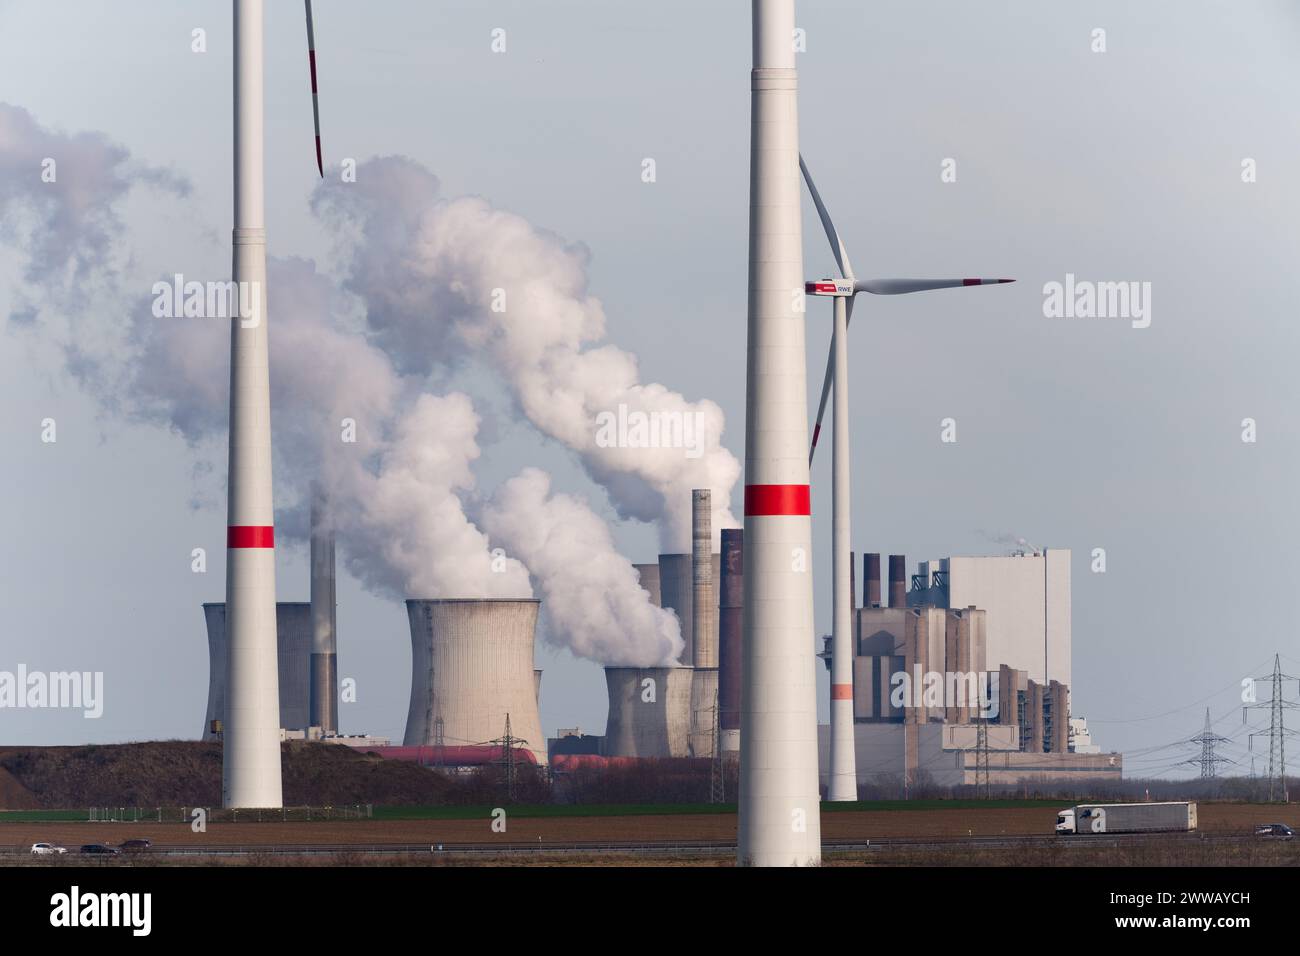 RWE Power AG Kraftwerk Neurath in Grevenbroich, North Rhine-Westphalia, Germany © Wojciech Strozyk / Alamy Stock Photo Stock Photo